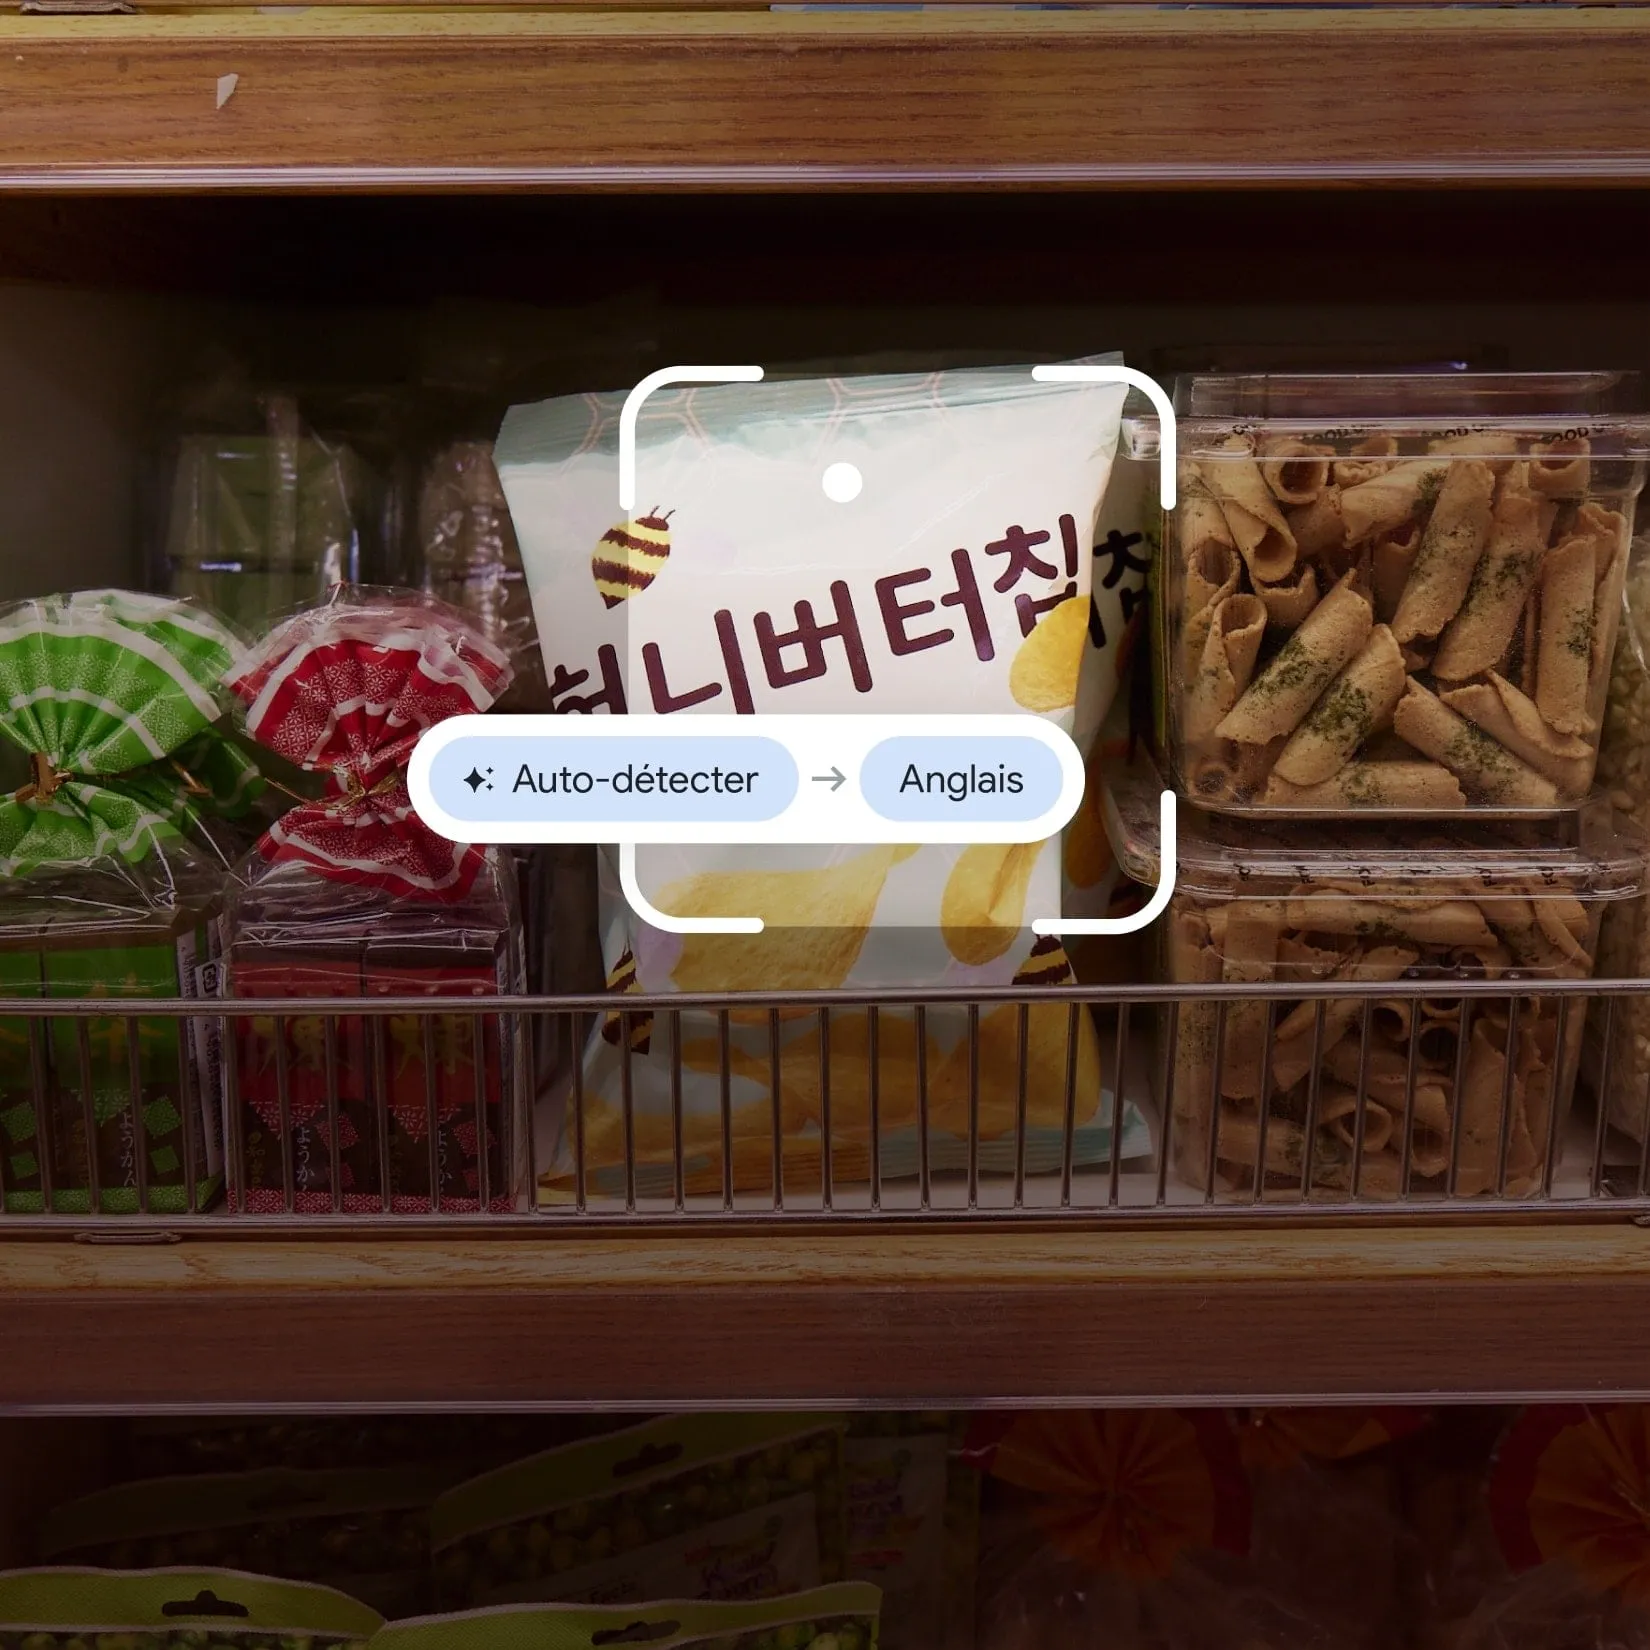 Image de Google Traduction utilisé sur un paquet de chips coréennes au miel et au beurre